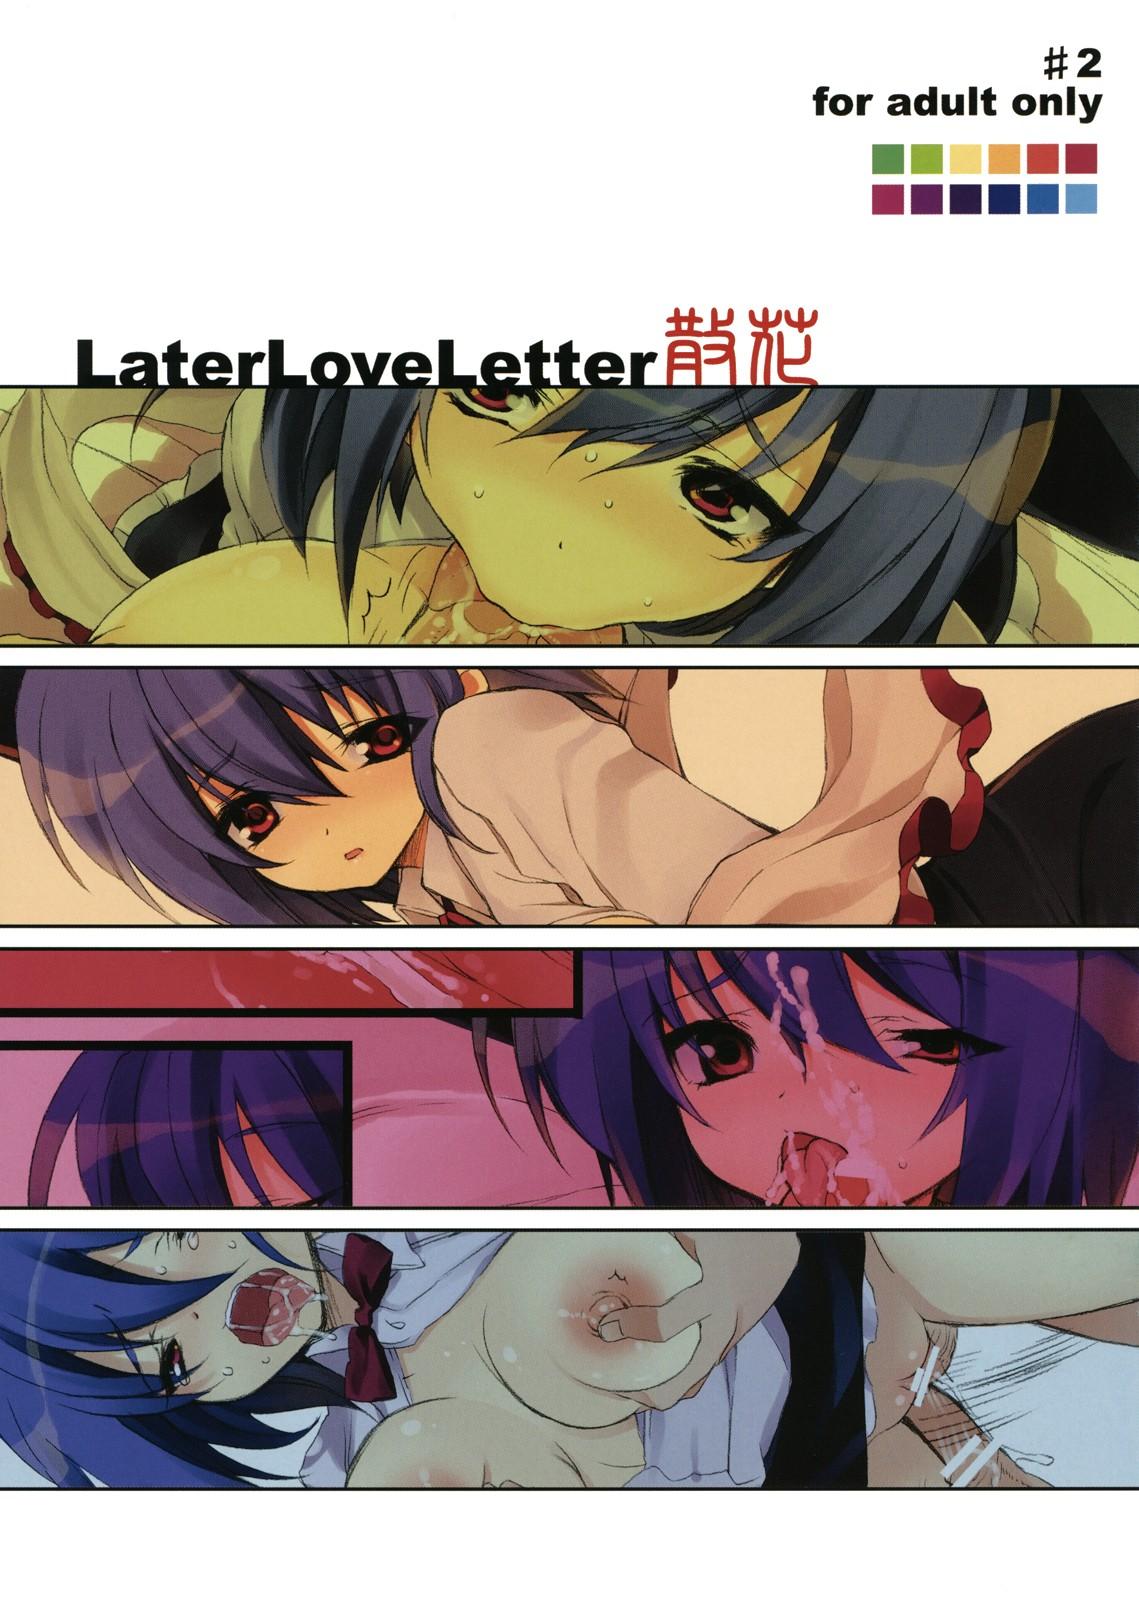 Later Love Letter Zange 17